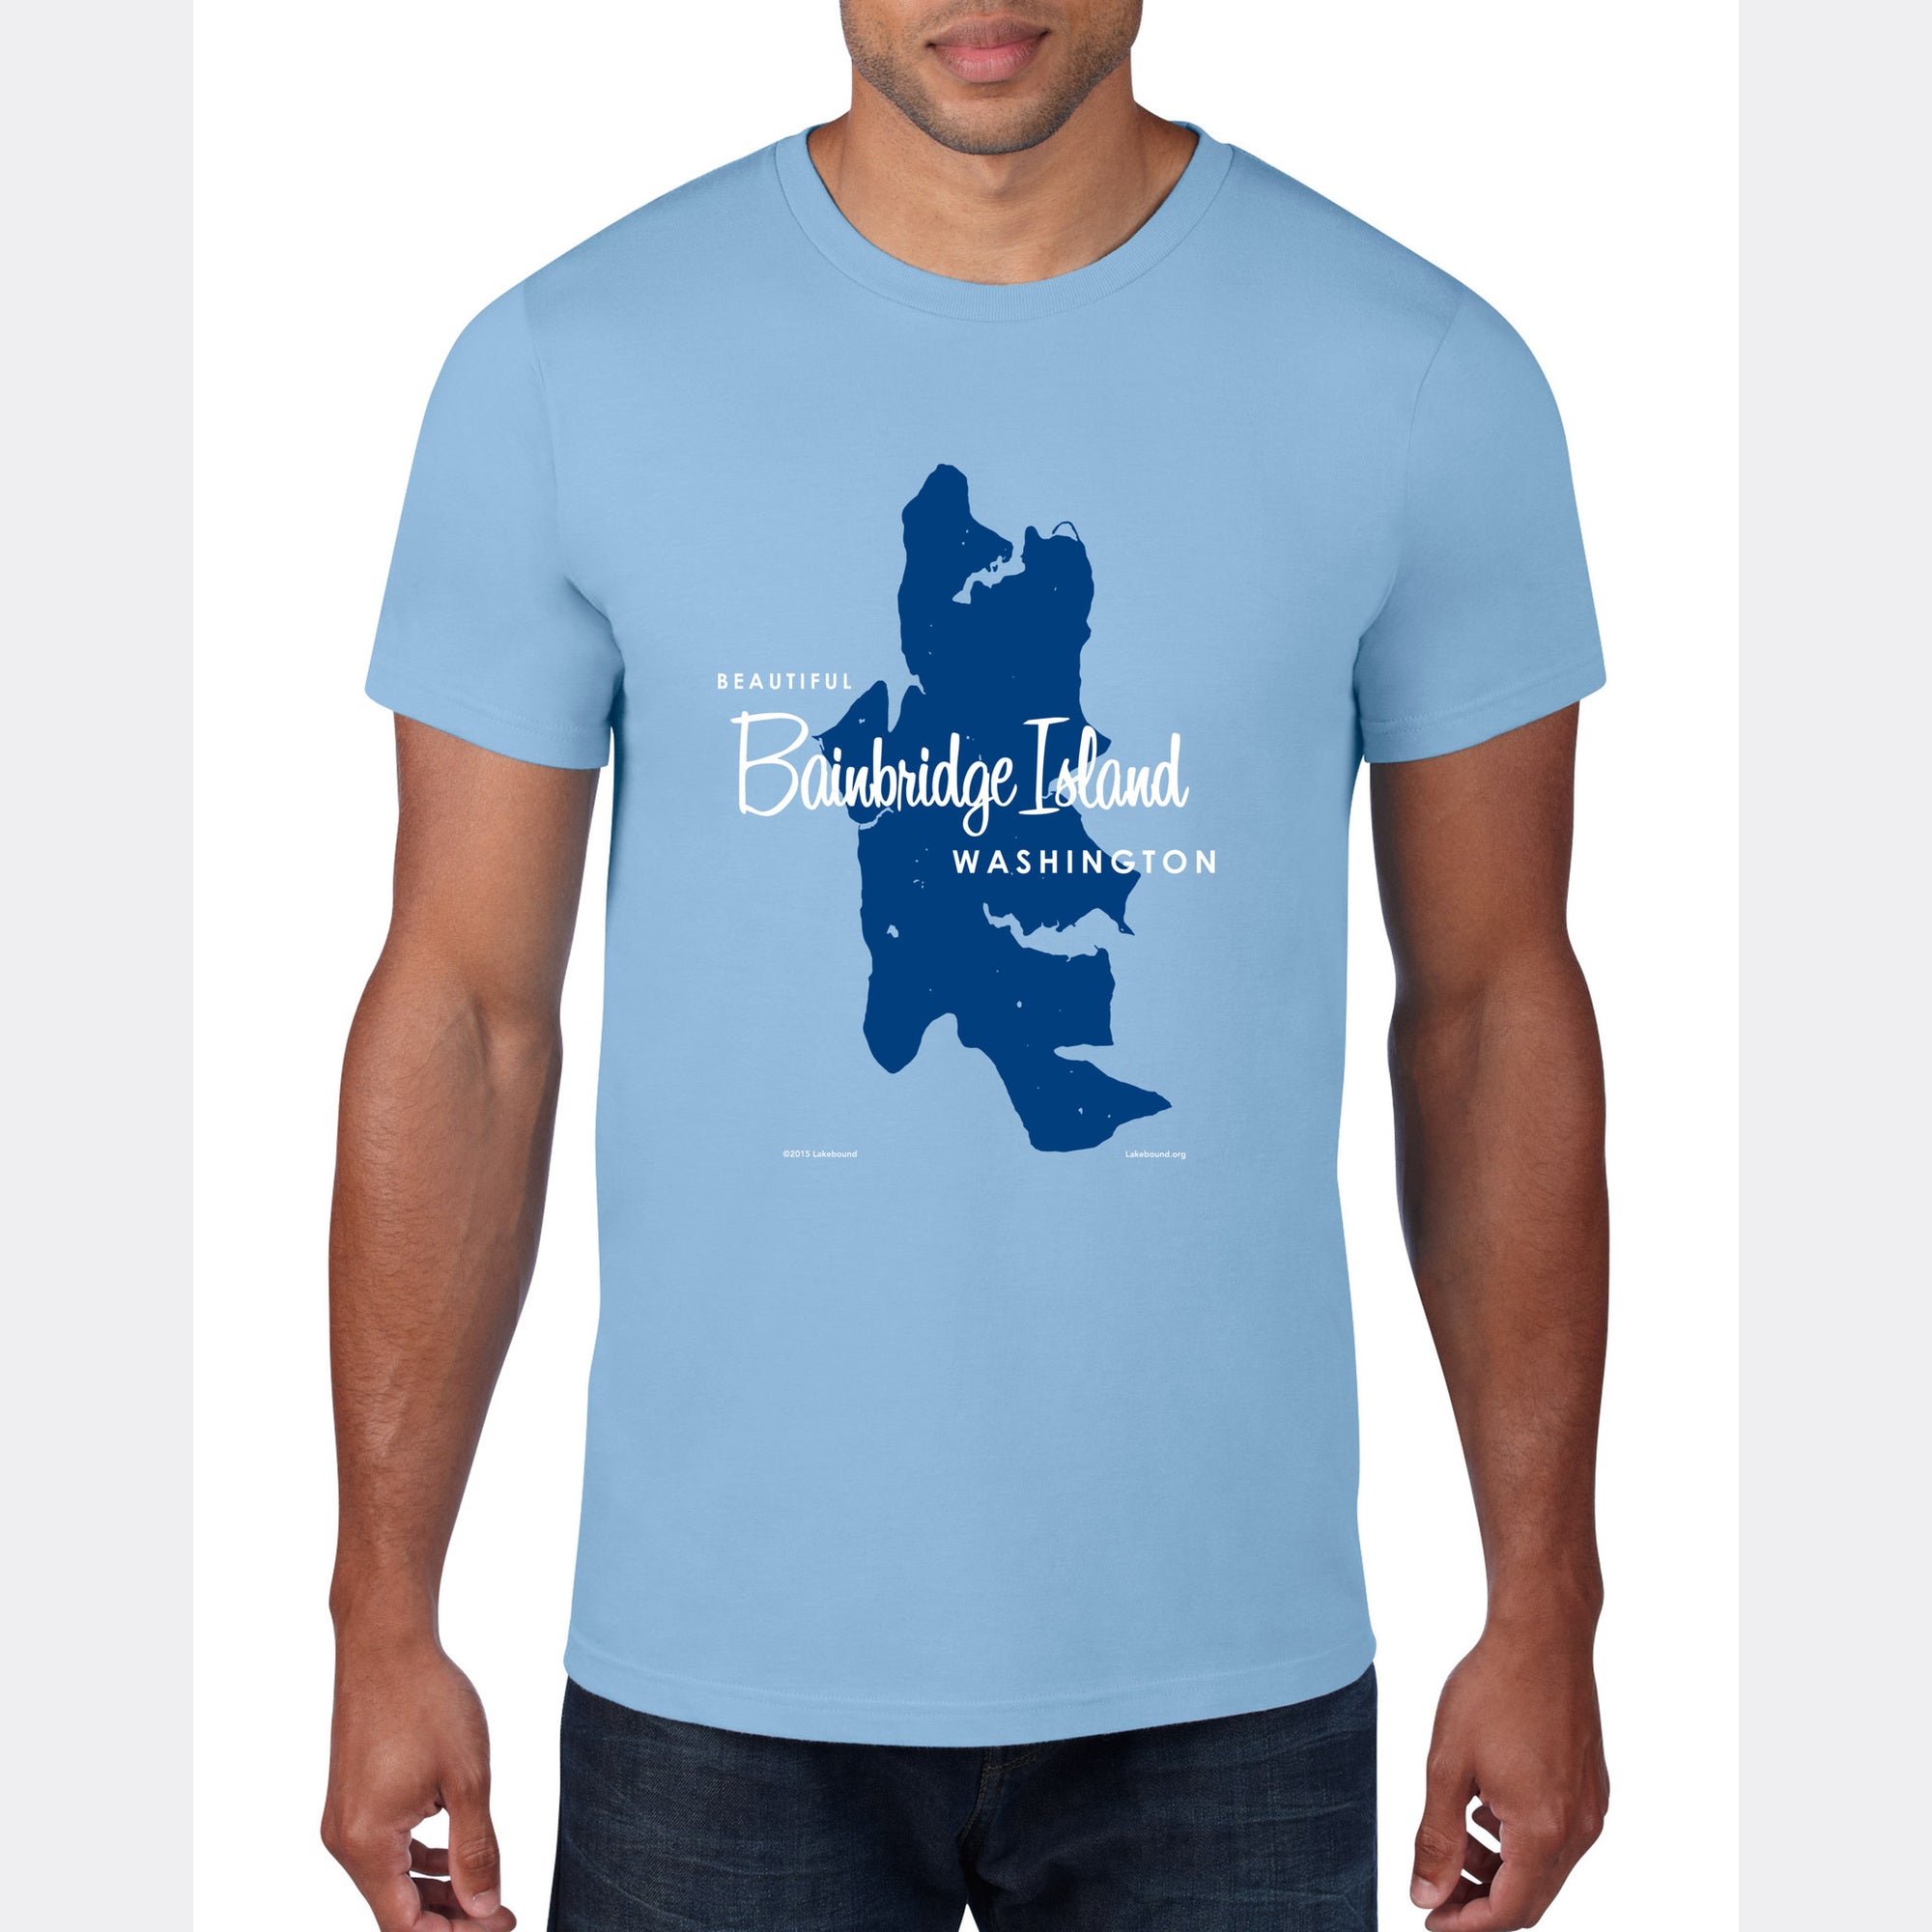 Bainbridge Island Washington, T-Shirt